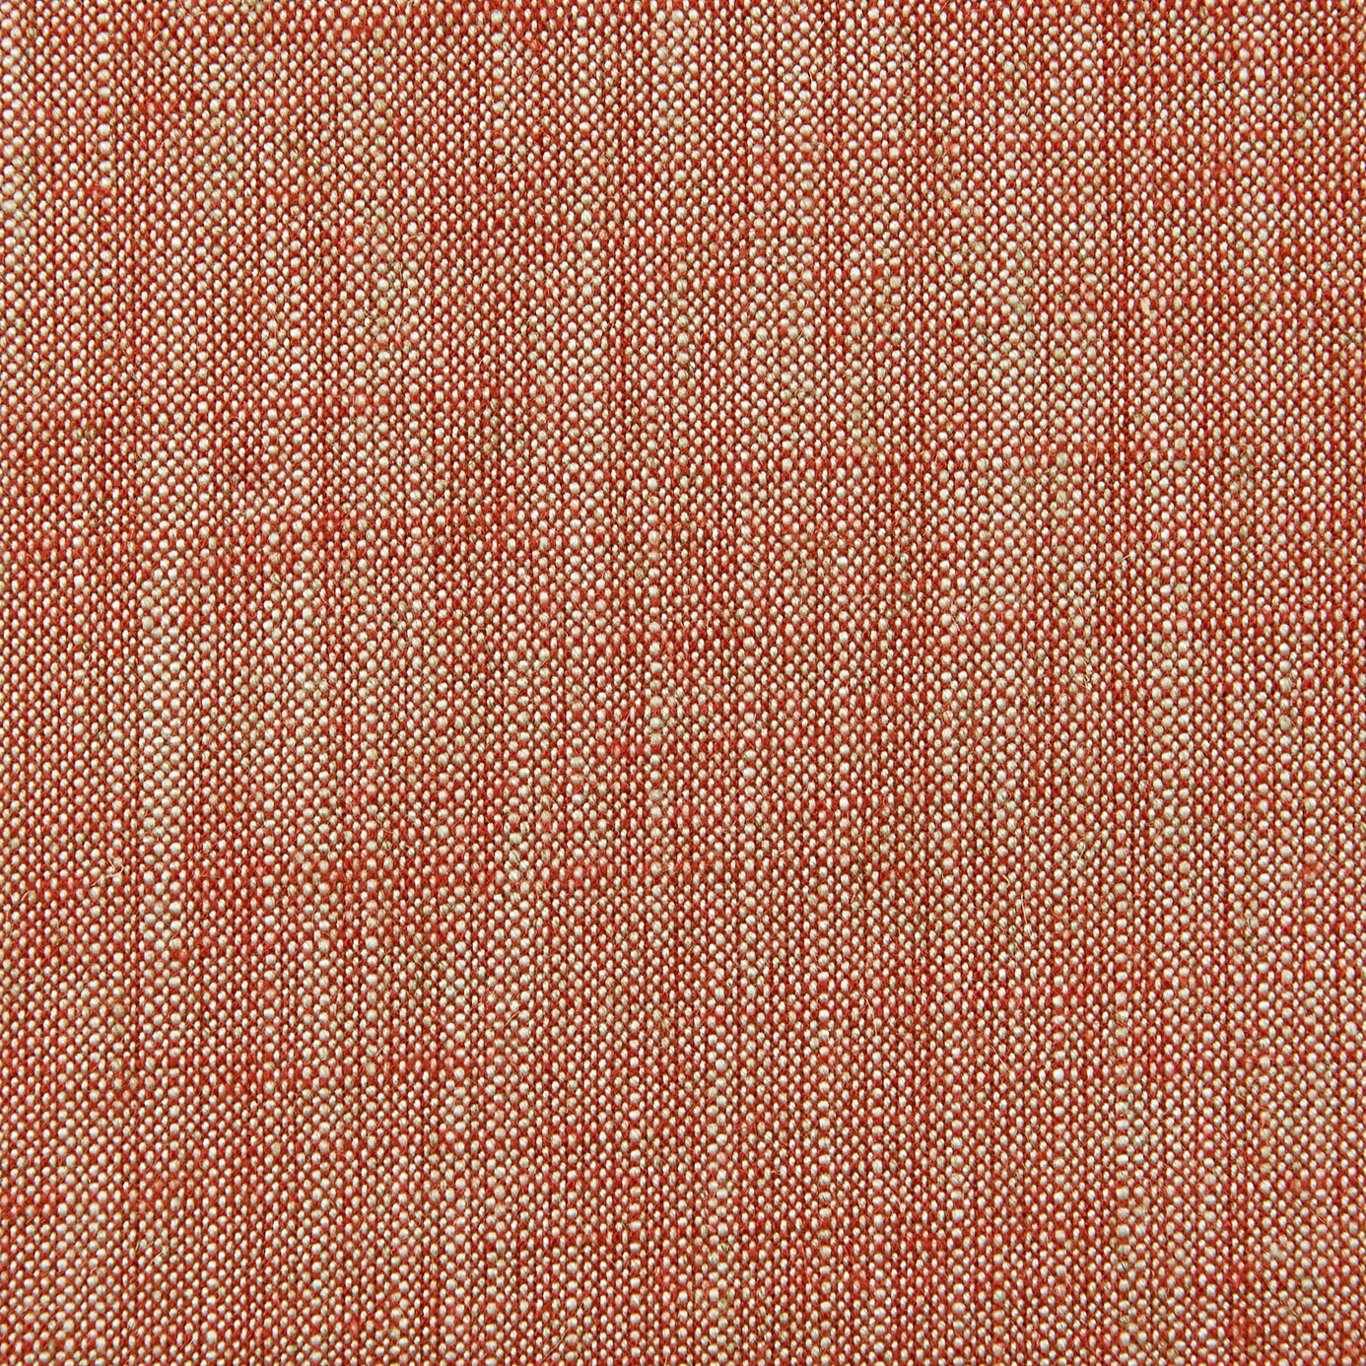 Biarritz Fabric by Clarke & Clarke - F0965/45 - Spice